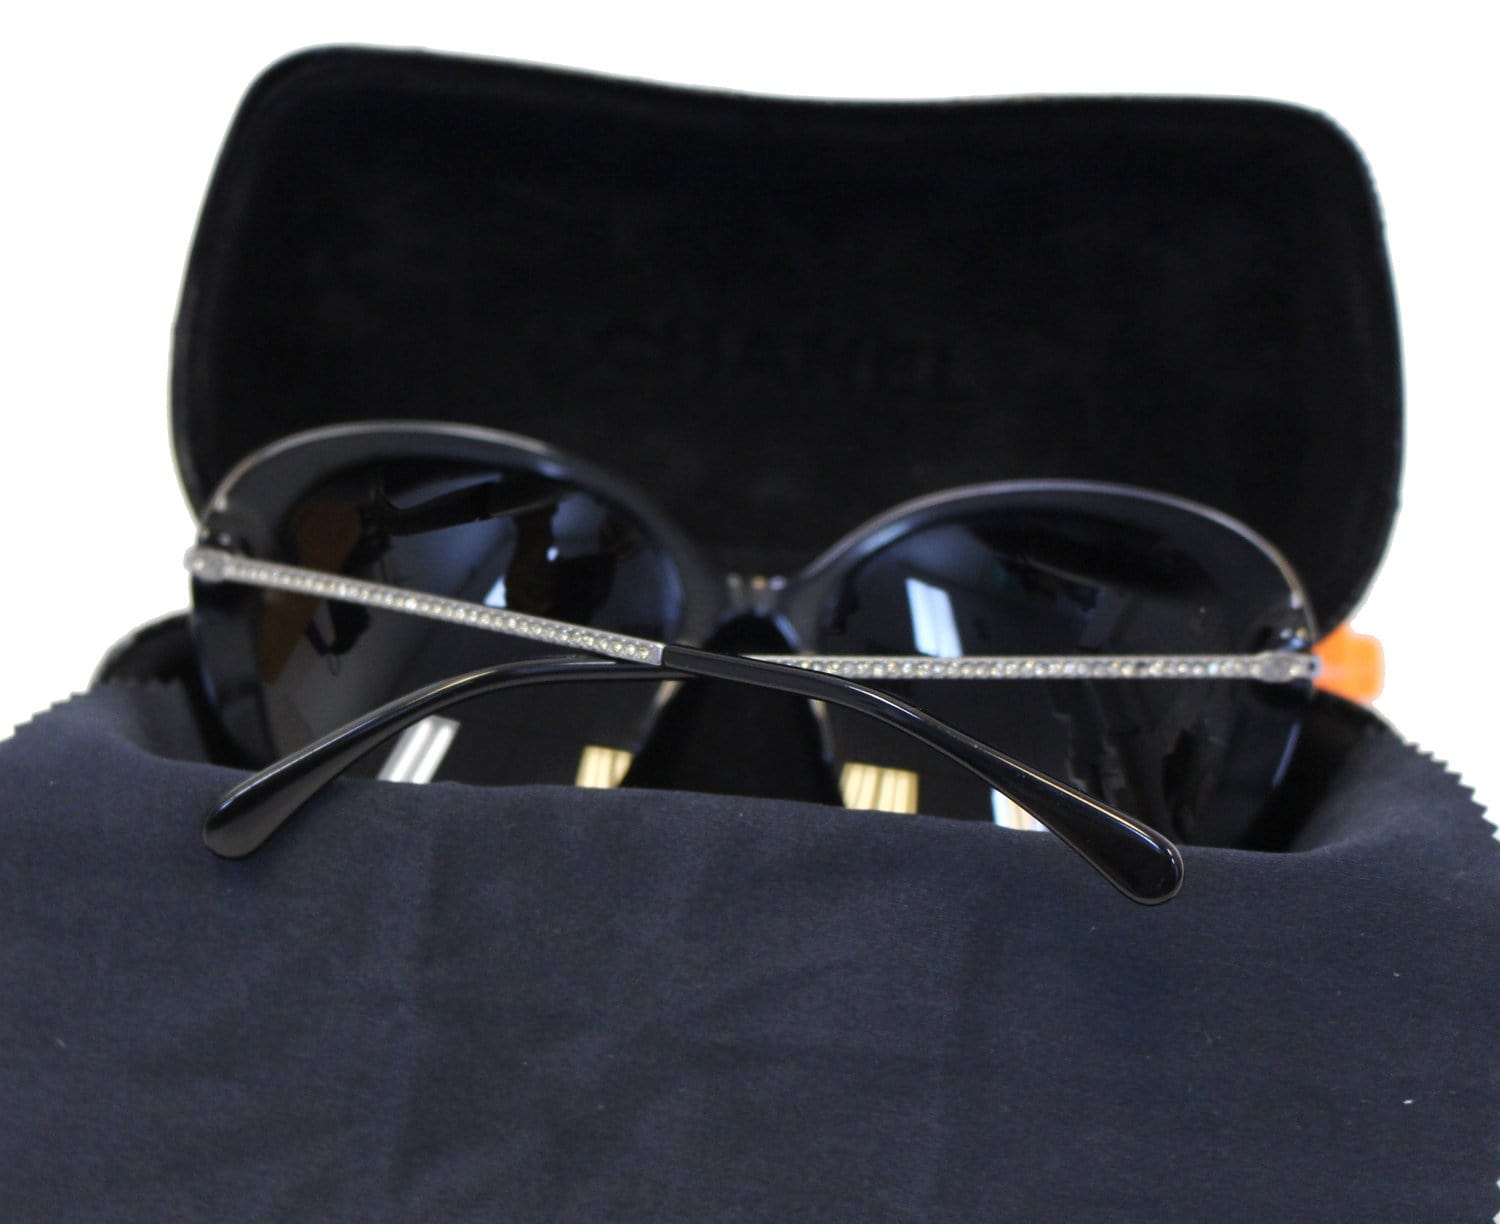 Chanel Sunglasses New Authentic 5484 c 760/S8 Black Gray Square